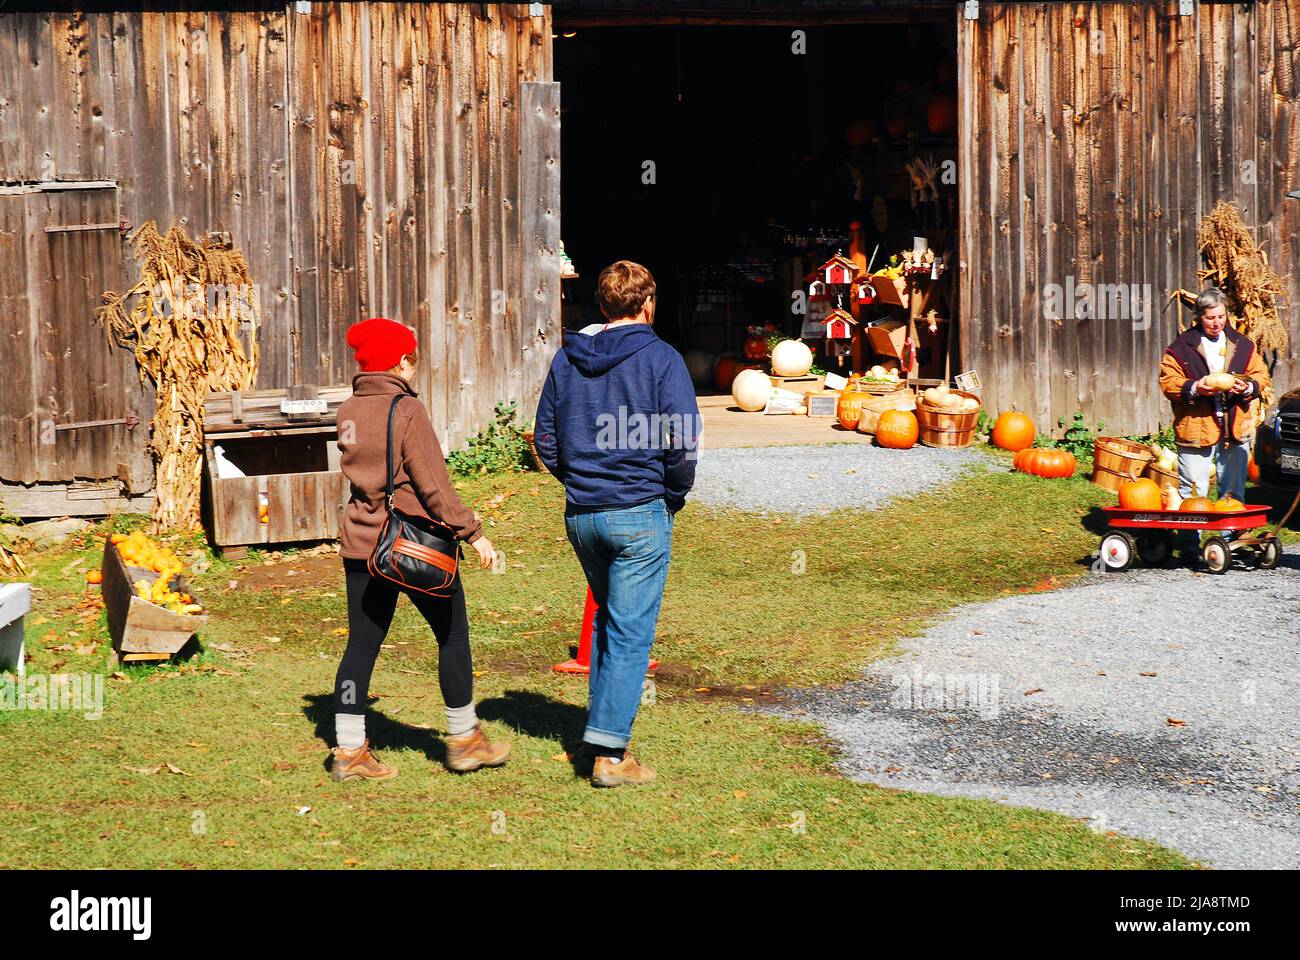 Un couple erre dans une ferme en bord de route, à la recherche de décorations d'automne Banque D'Images